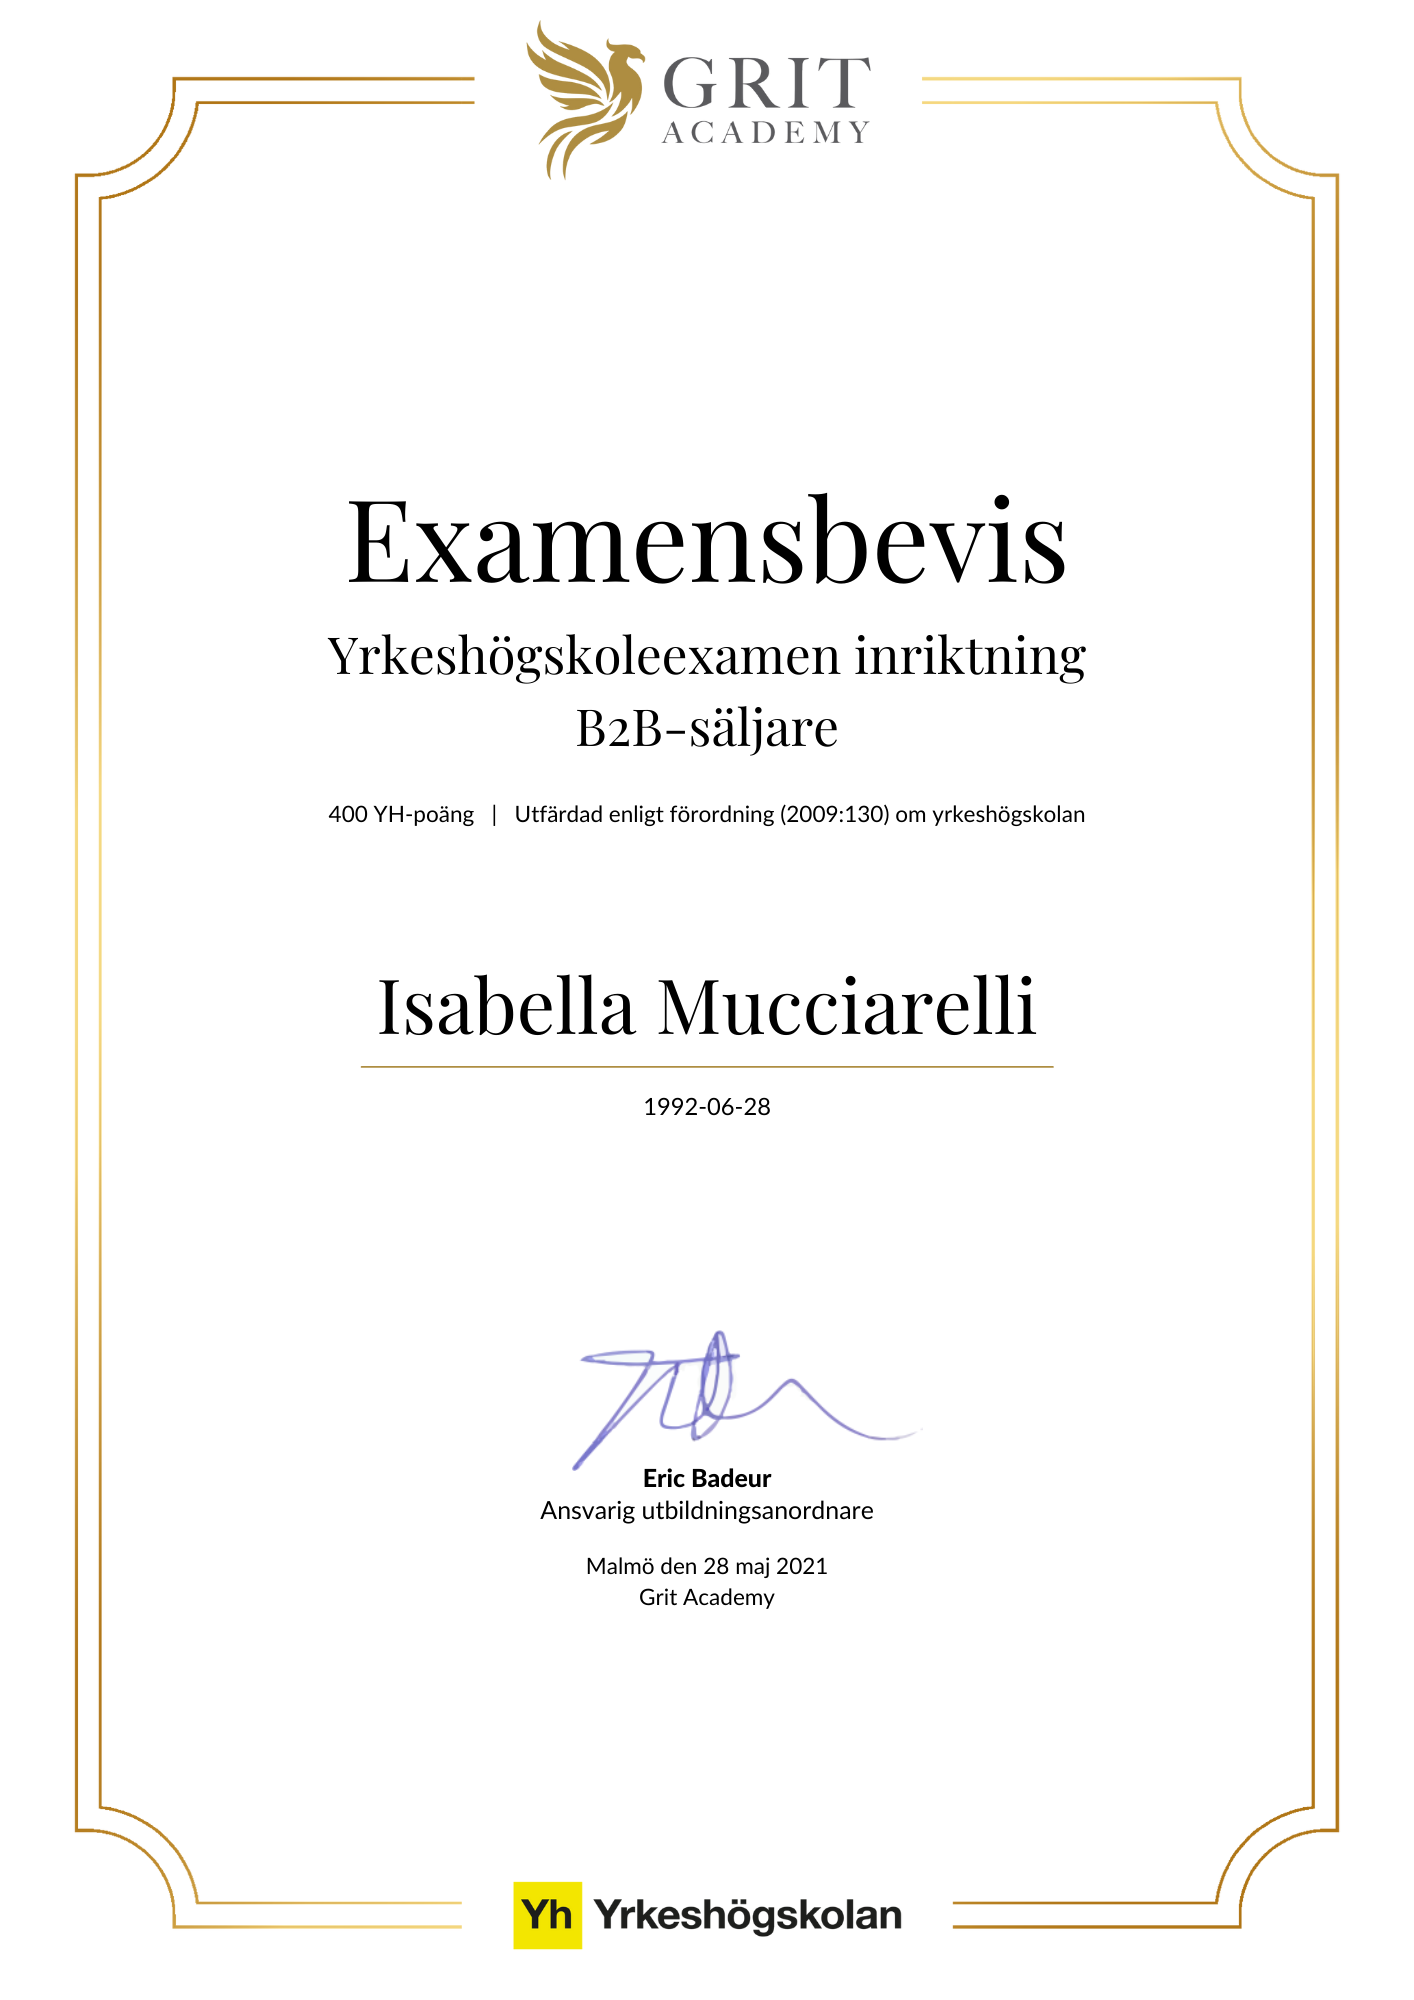 Examensbevis Isabella Mucciarelli - 1